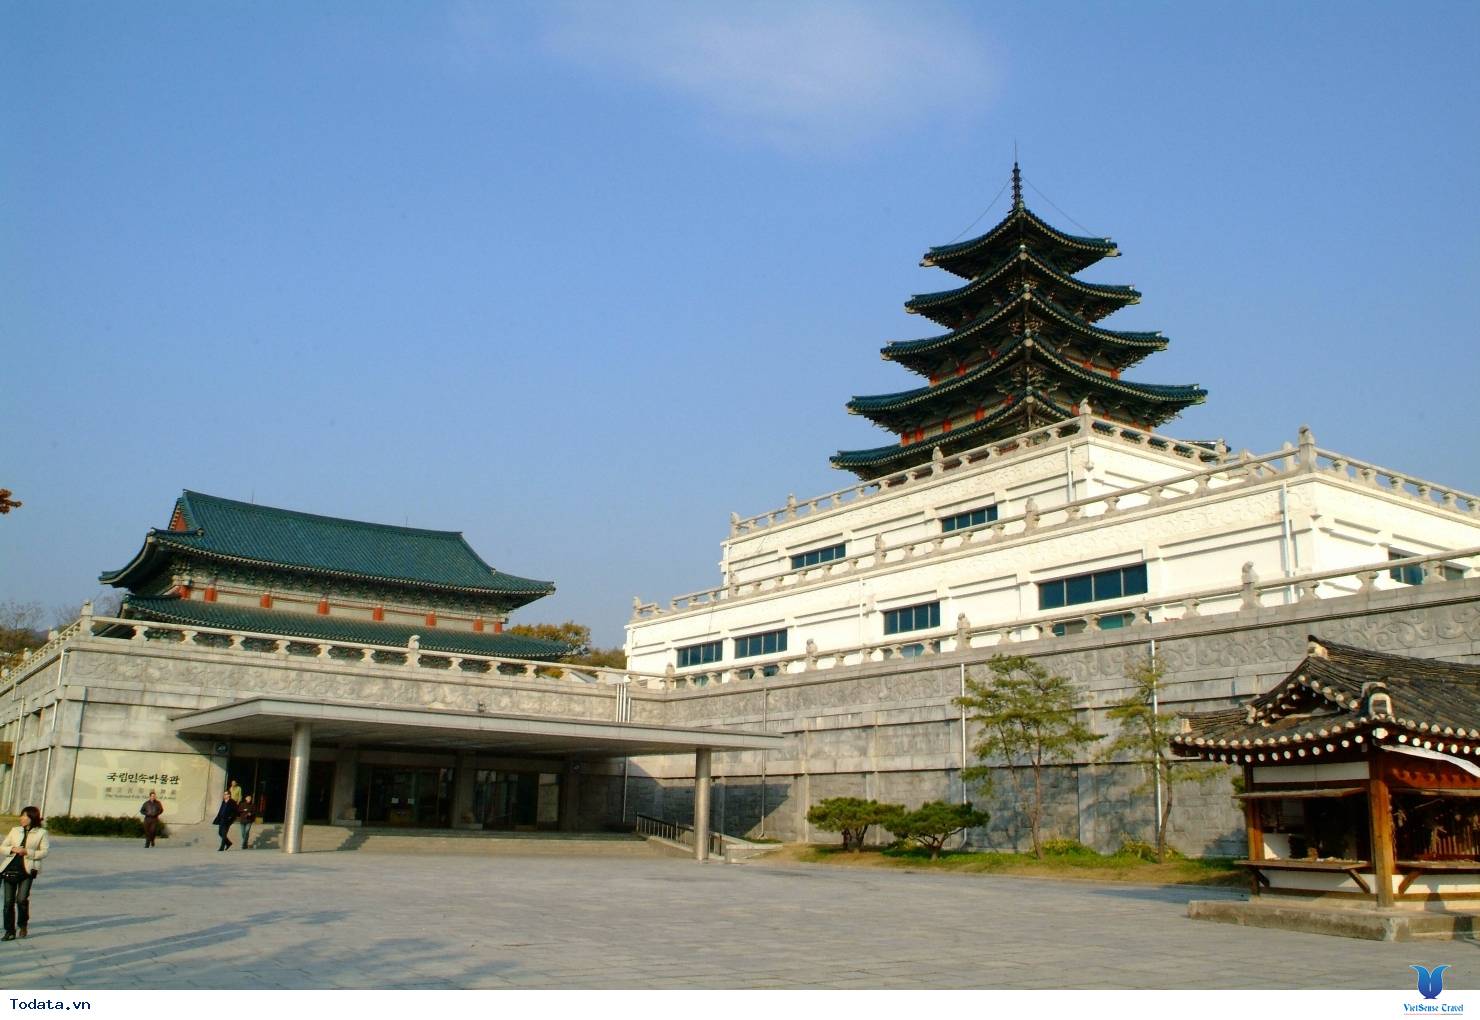 Cung điện Gyeongbok soi bóng nét cổ kính giữa đô thị hiện đại